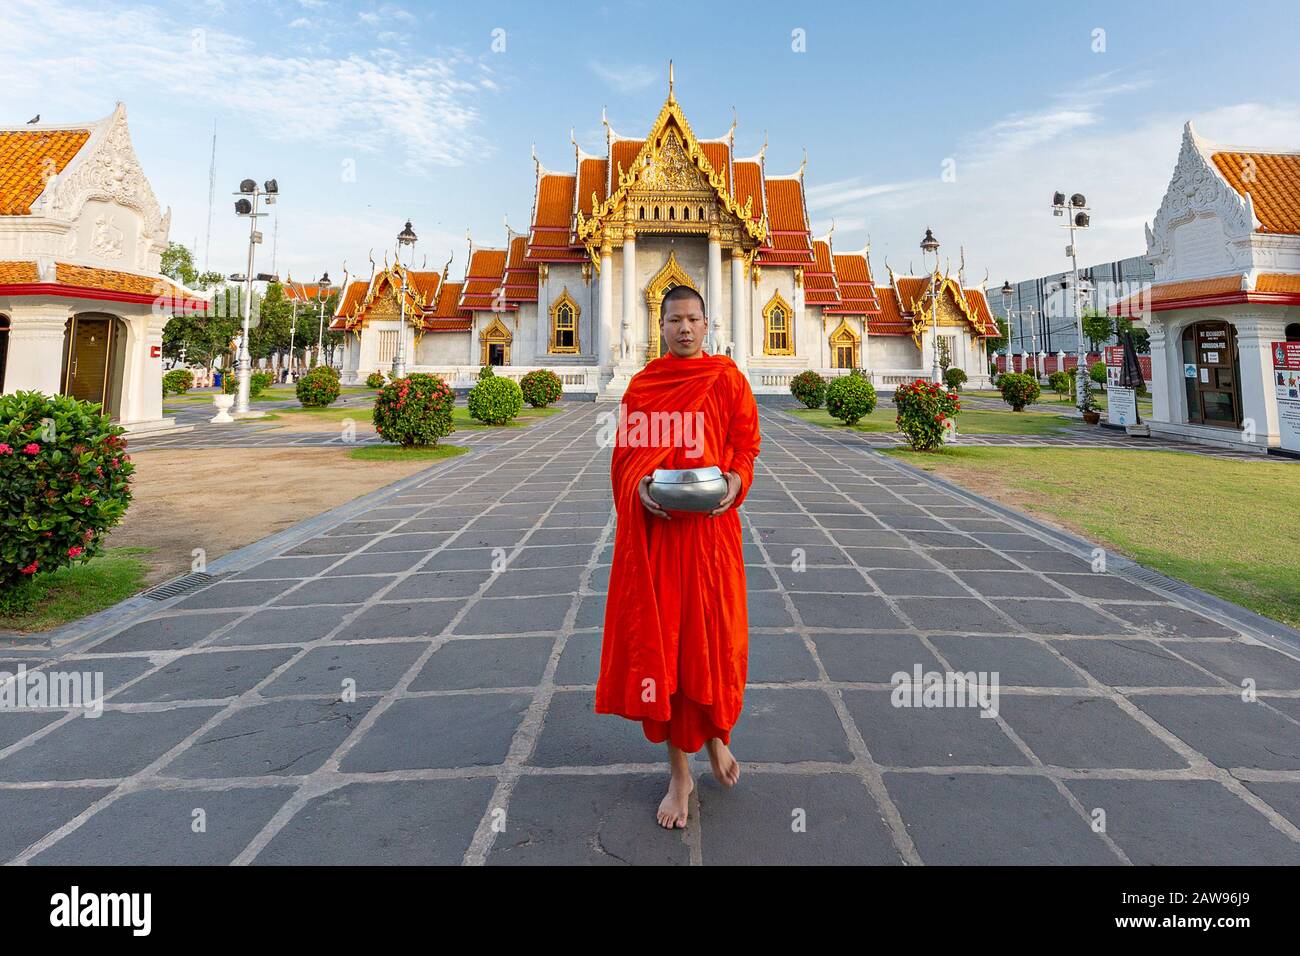 Mönch hält seine Schale, um Nahrung und Opfergaben am Tor des Marmortempels zu sammeln, der als Wat Benchamabopit Dusitvanaram in Bangkok, Thailand, bekannt ist Stockfoto